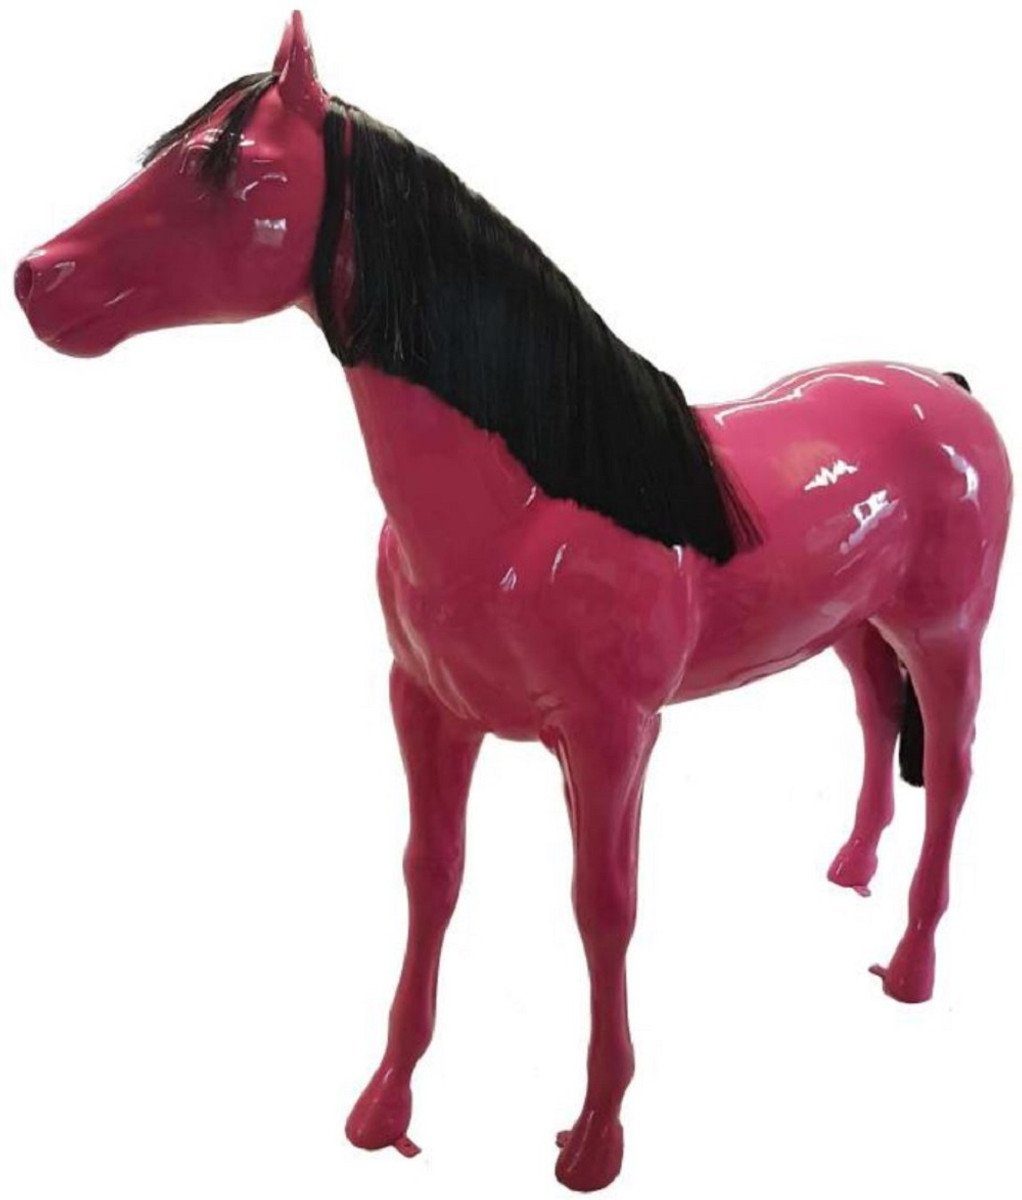 Casa Padrino Skulptur Luxus Deko Skulptur Pferd Pink / Schwarz 240 x H. 200 cm - Riesige Gartenskulptur - Lebensgroße Skulptur - XXL Deko Skulptur - XXL Deko Figur - XXL Tierfigur - Luxus Deko Tierfigur